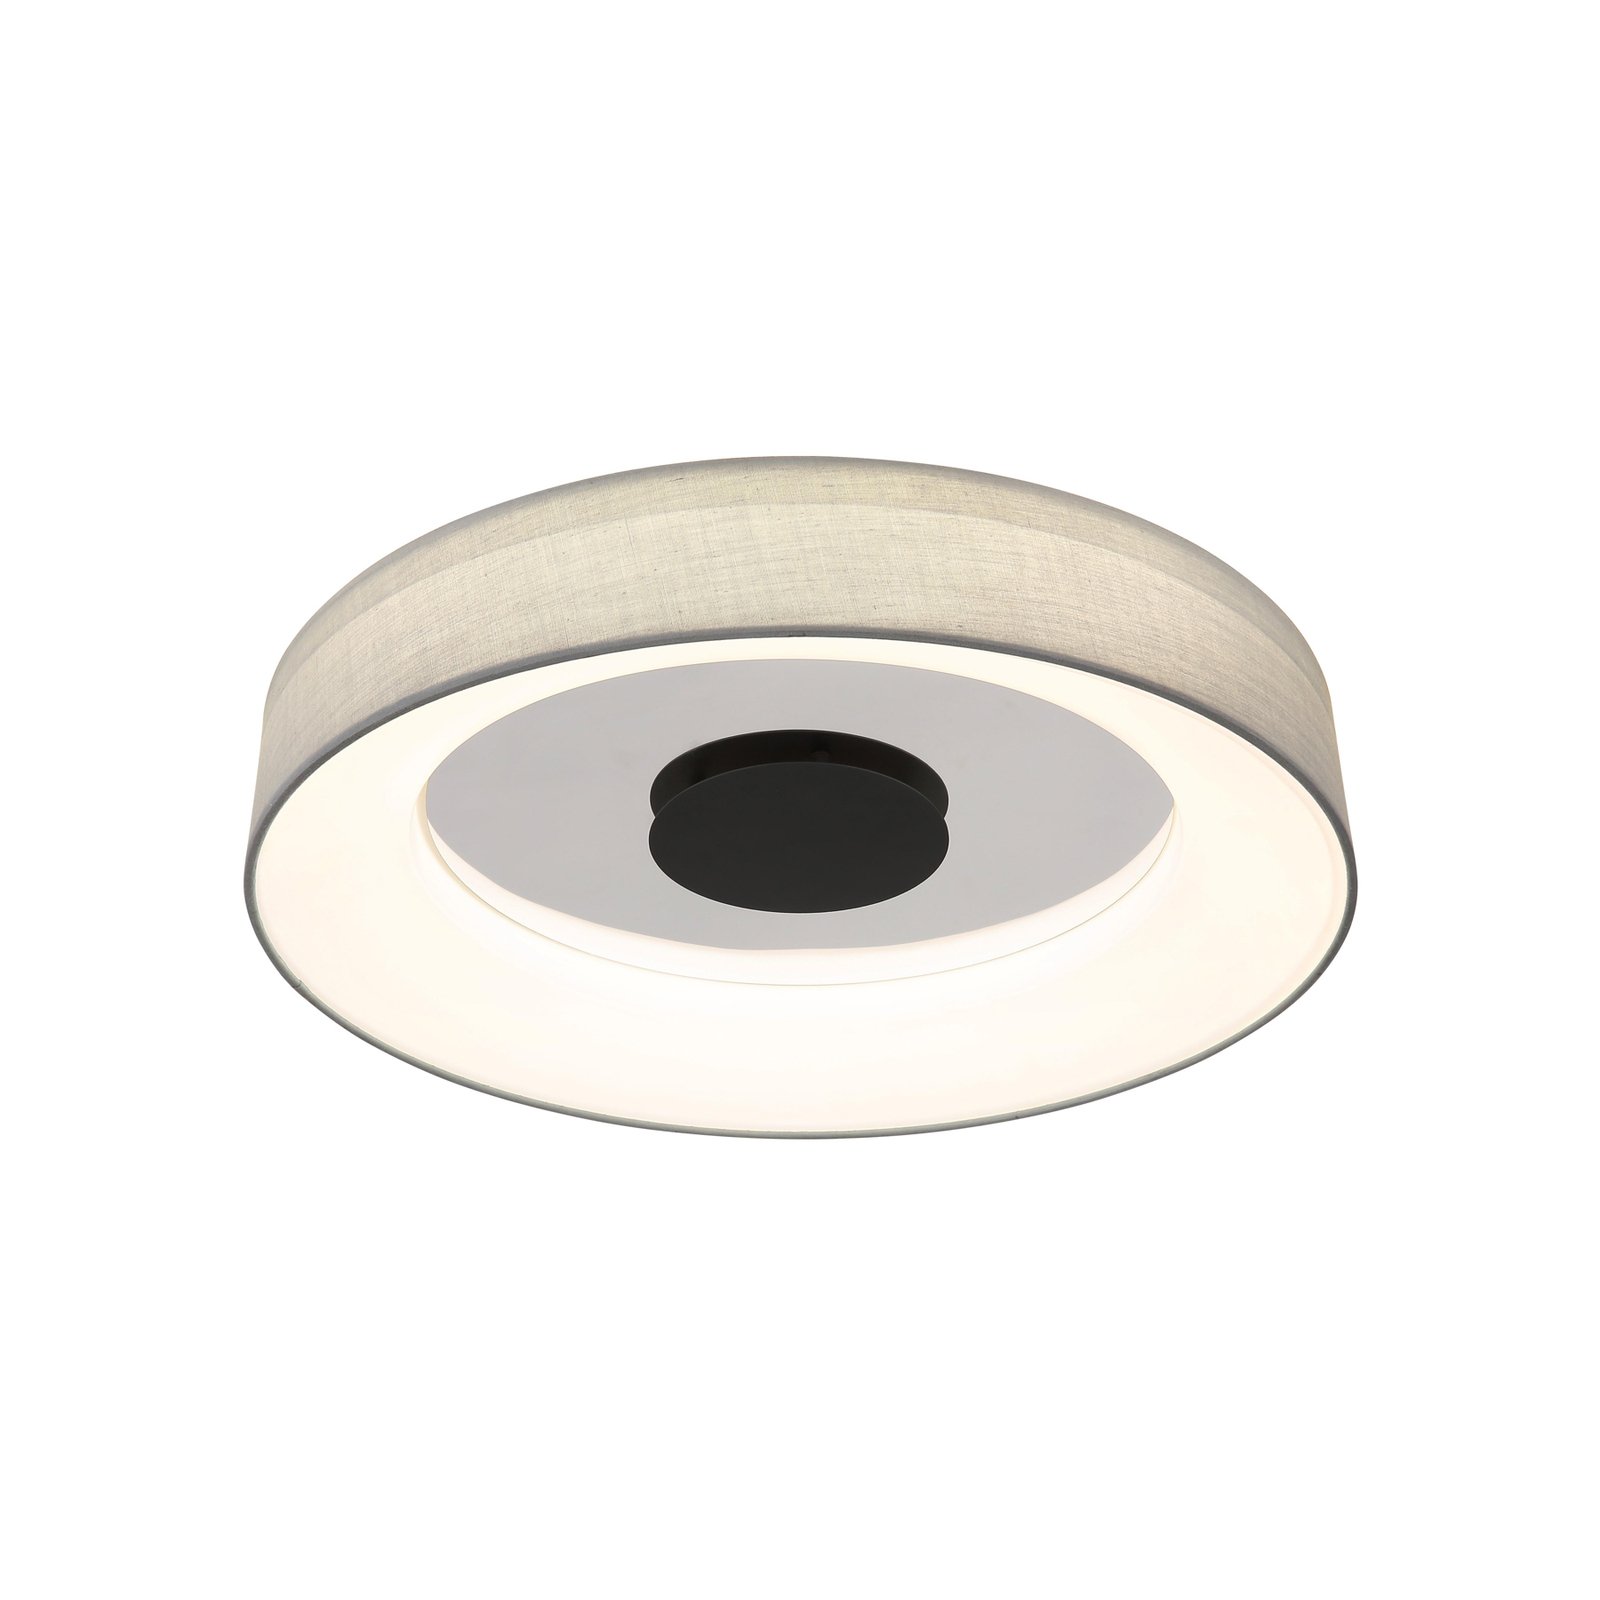 Chytré stropní svítidlo LED Terpsa, bílá/šedá, Ø 46,8 cm, tkanina